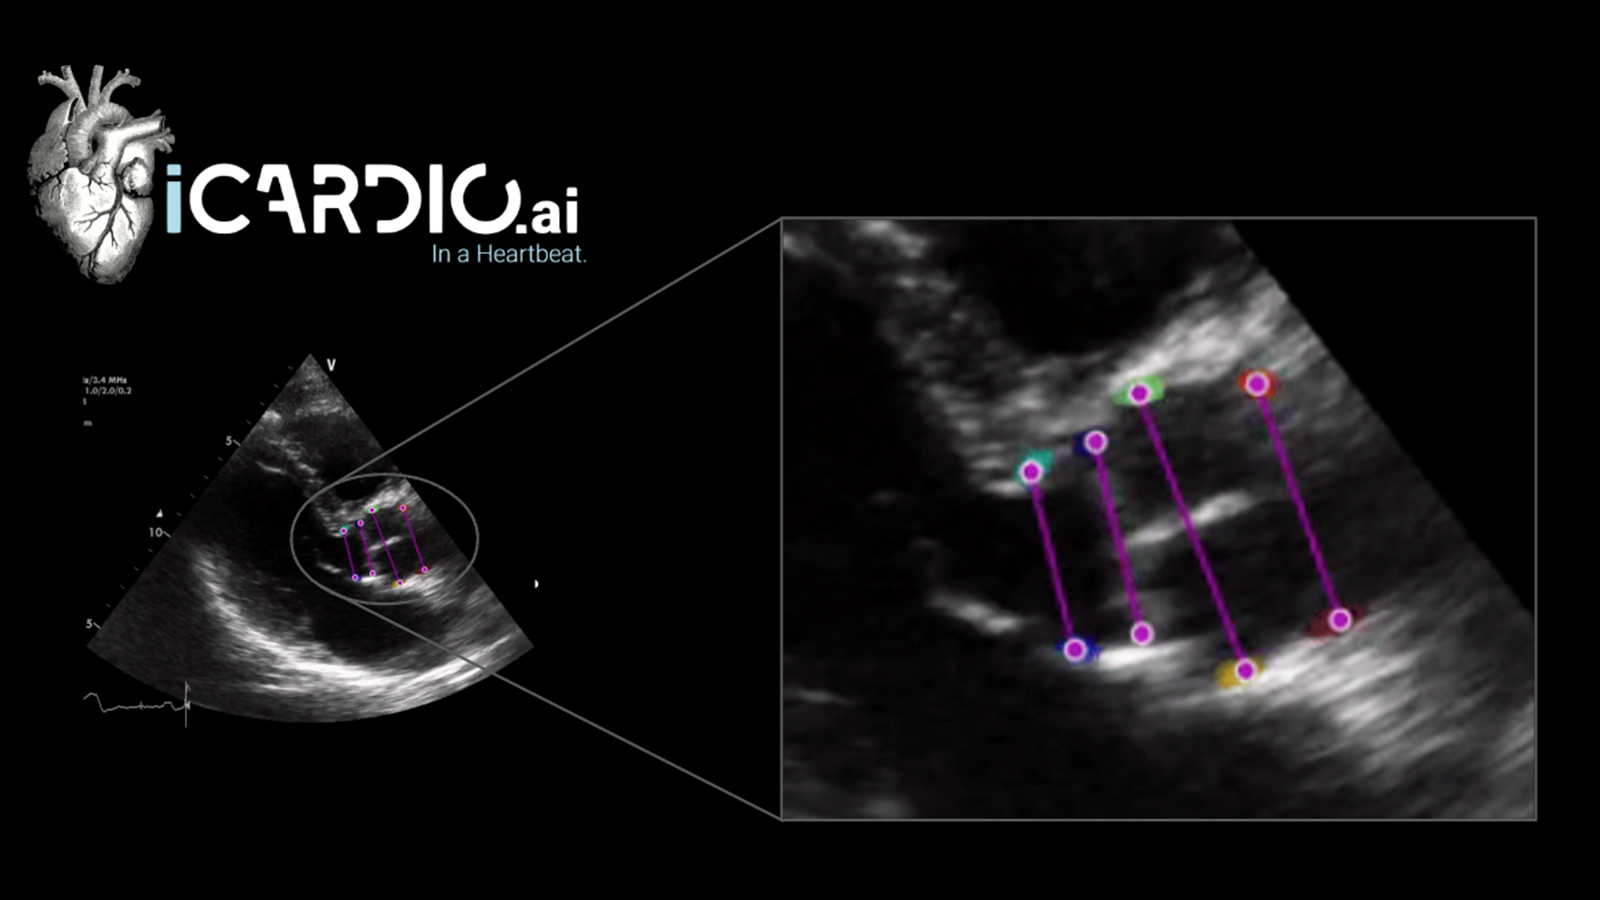 iCardio ultrasound image